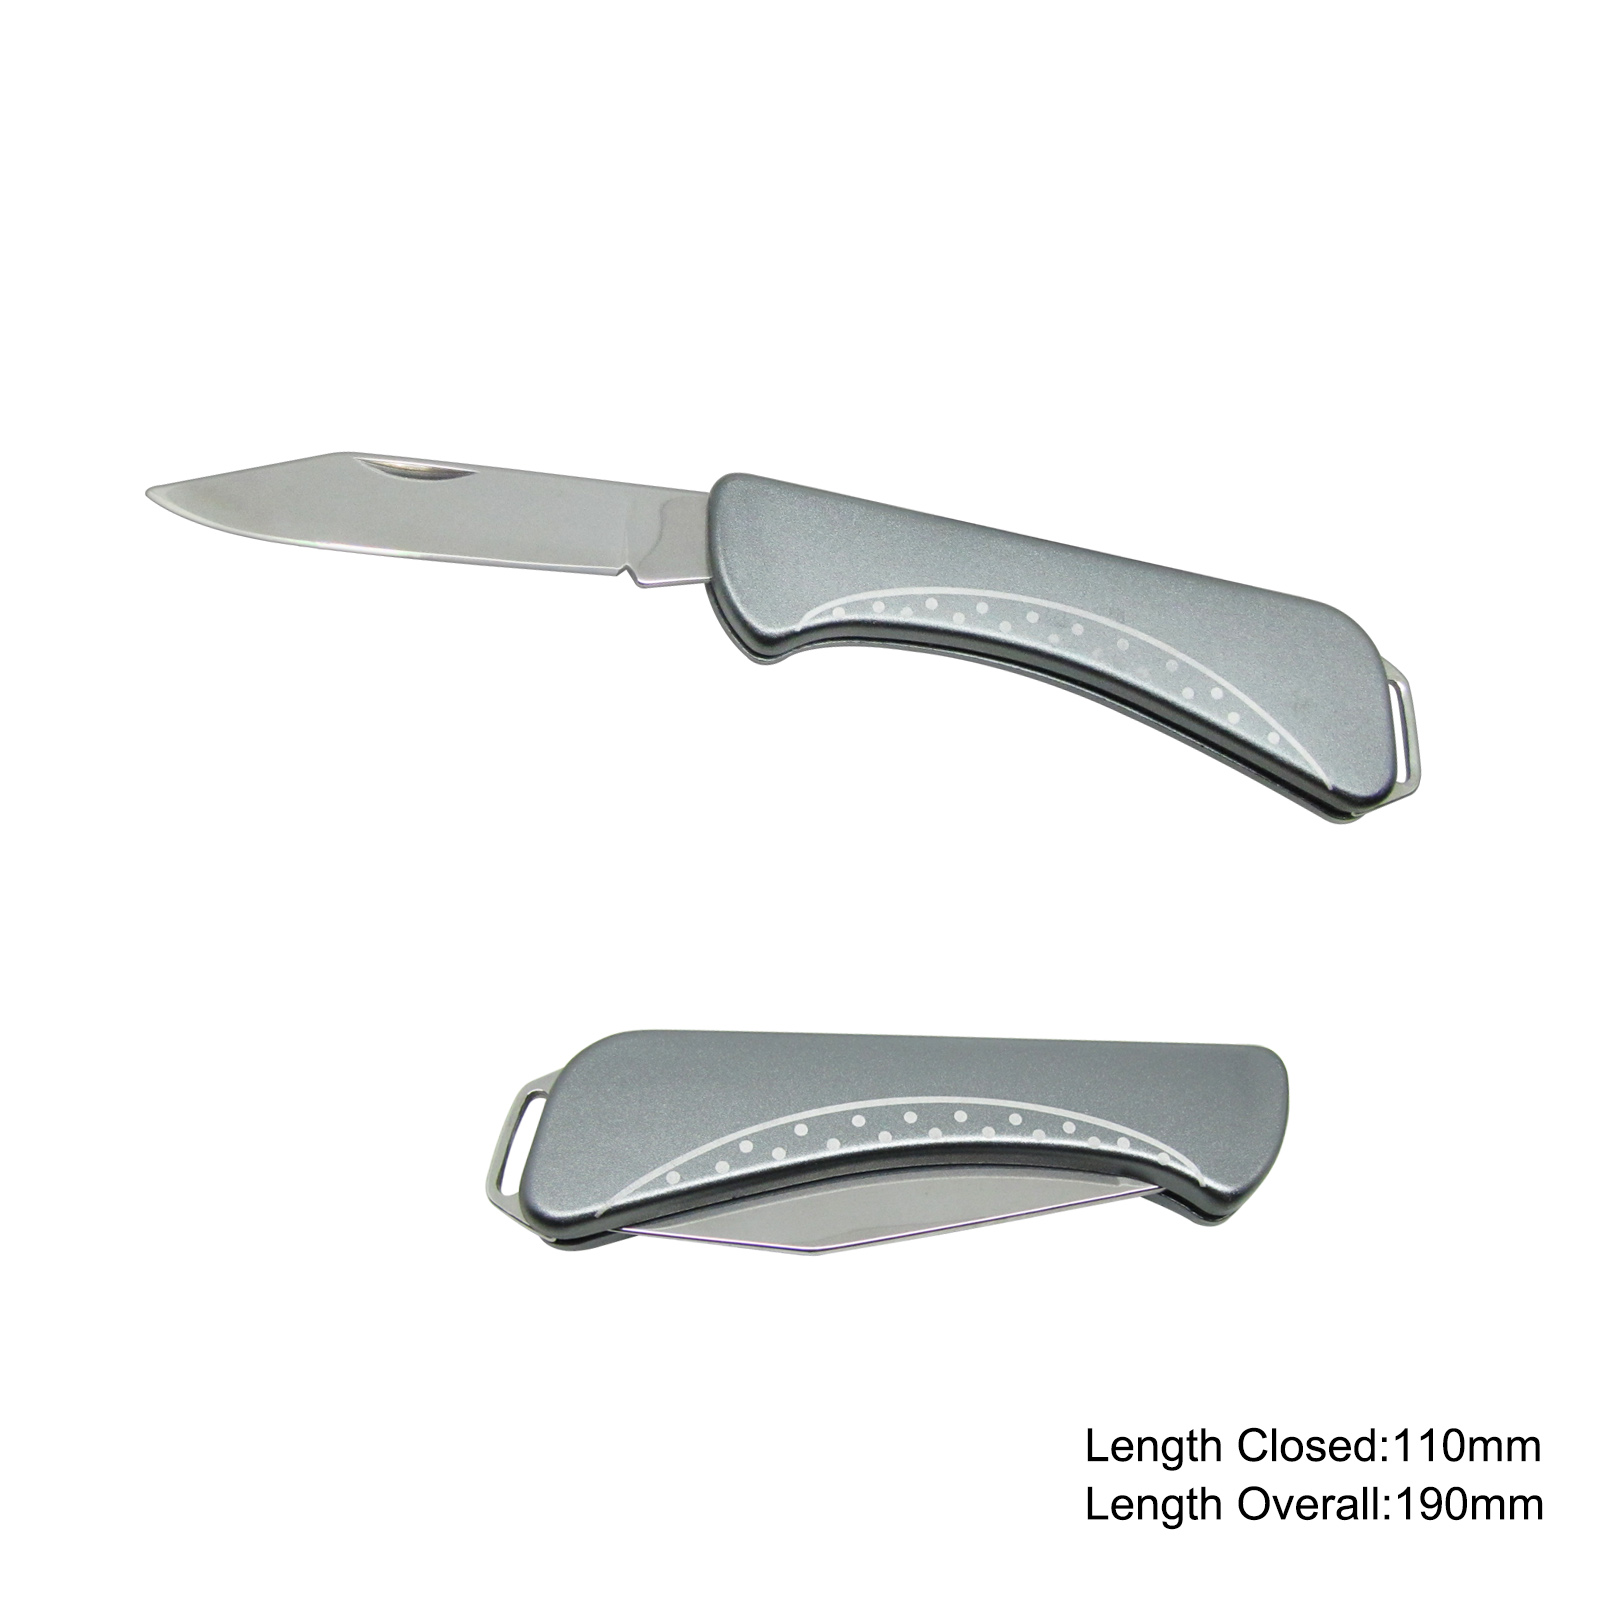 #3633 Folding Knife with Anodized Aluminum Handle